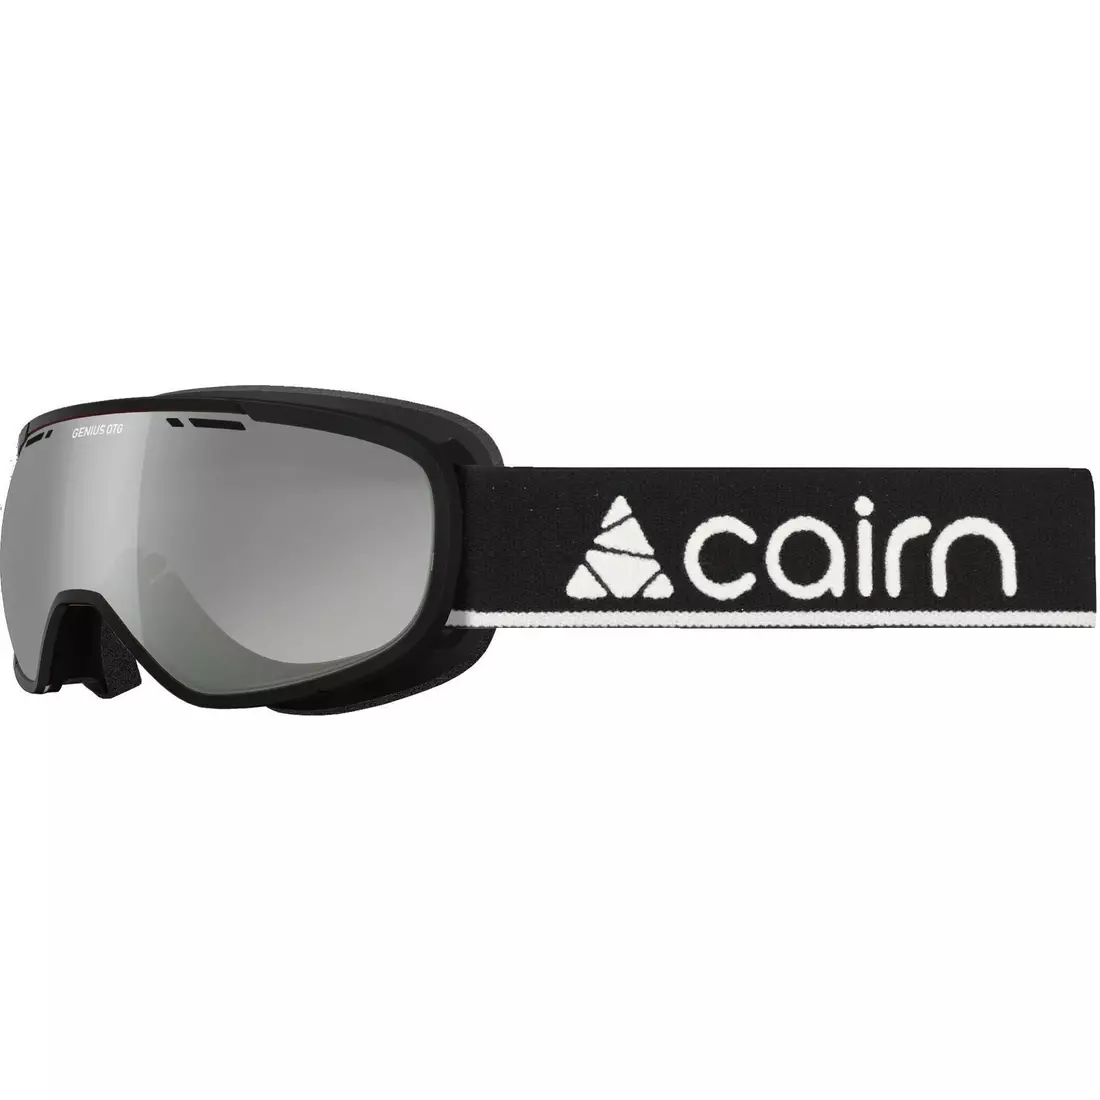 CAIRN gogle narciarskie/snowboardowe GENIUS OTG SPX3000 black 581300802